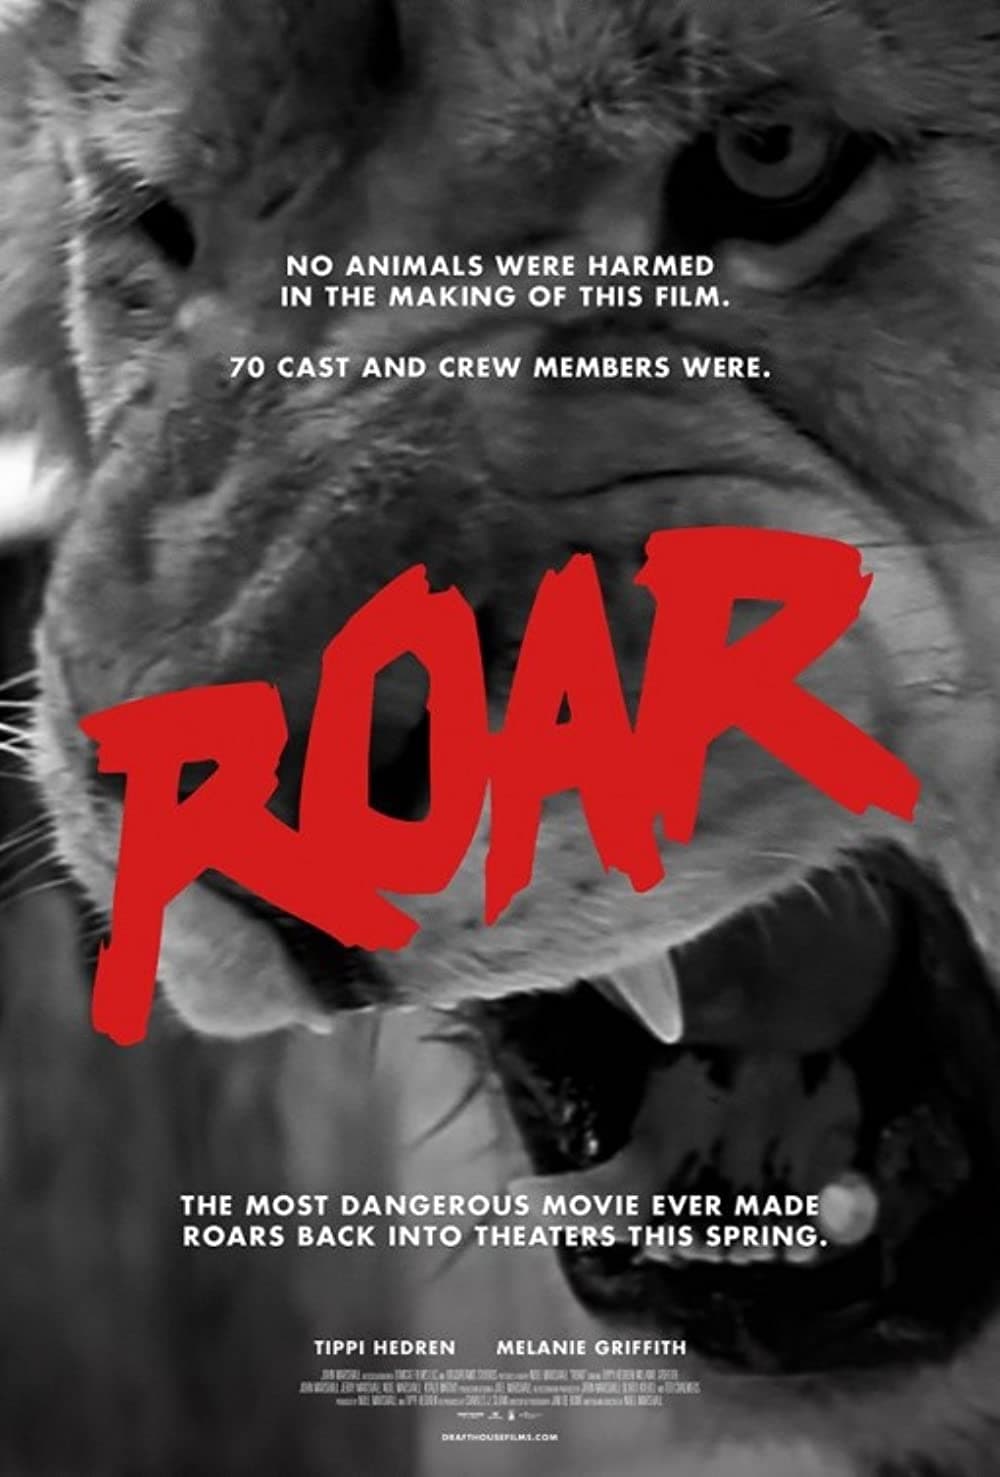 The Making of Roar